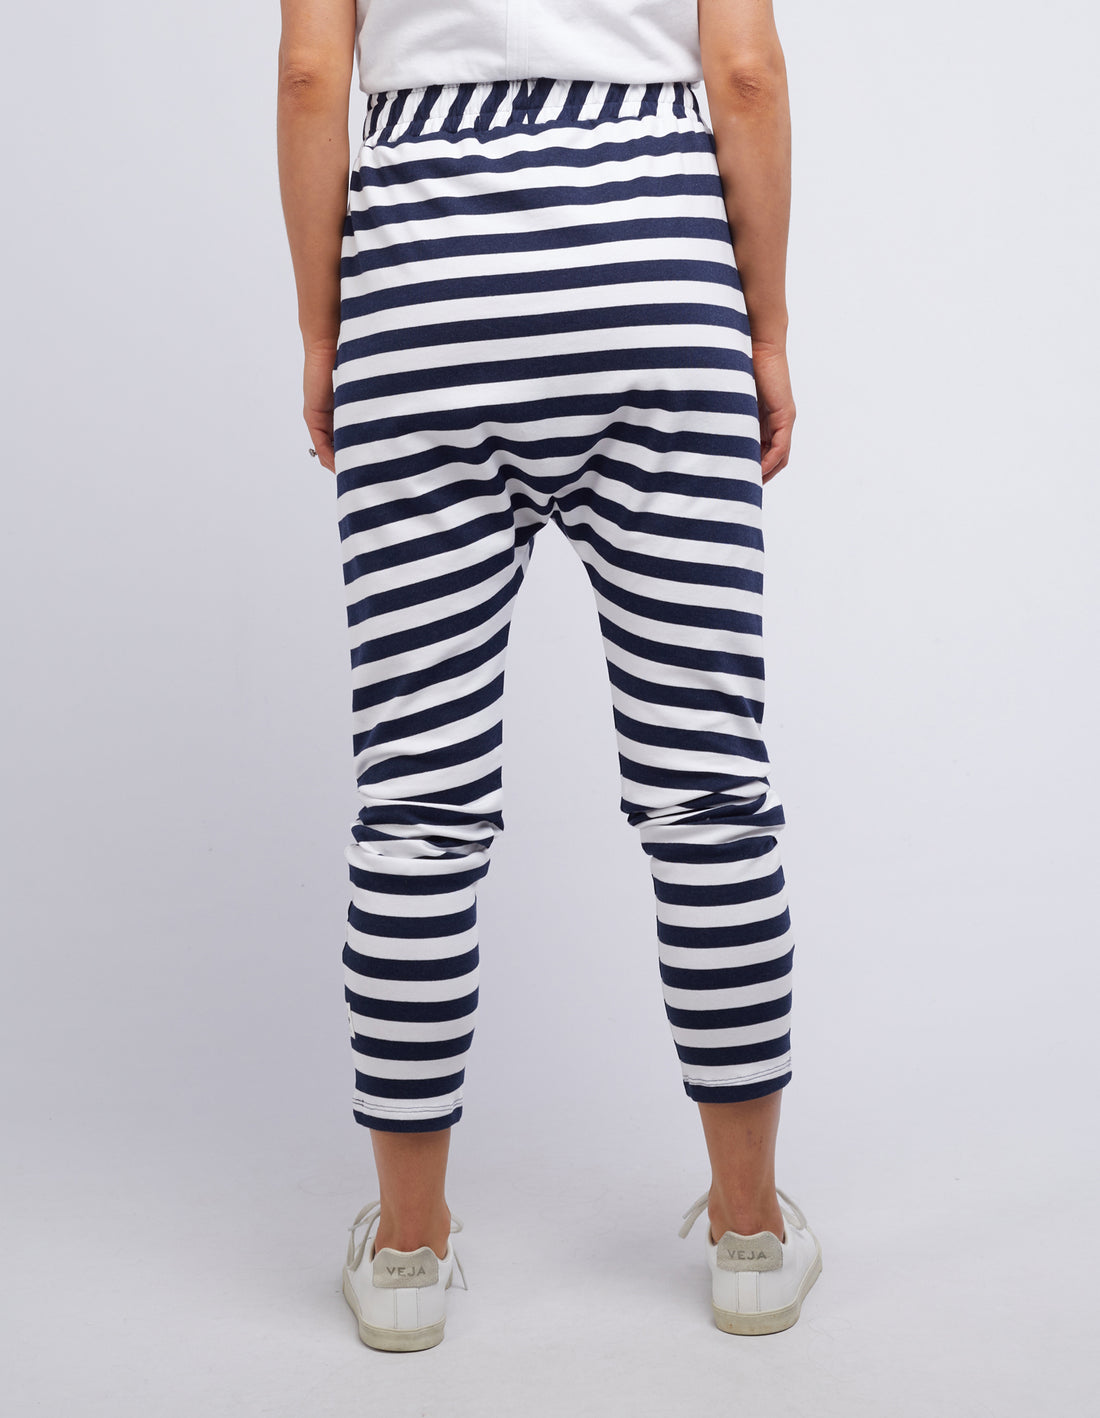 Sasha Stripe Pant - Navy & White Stripe